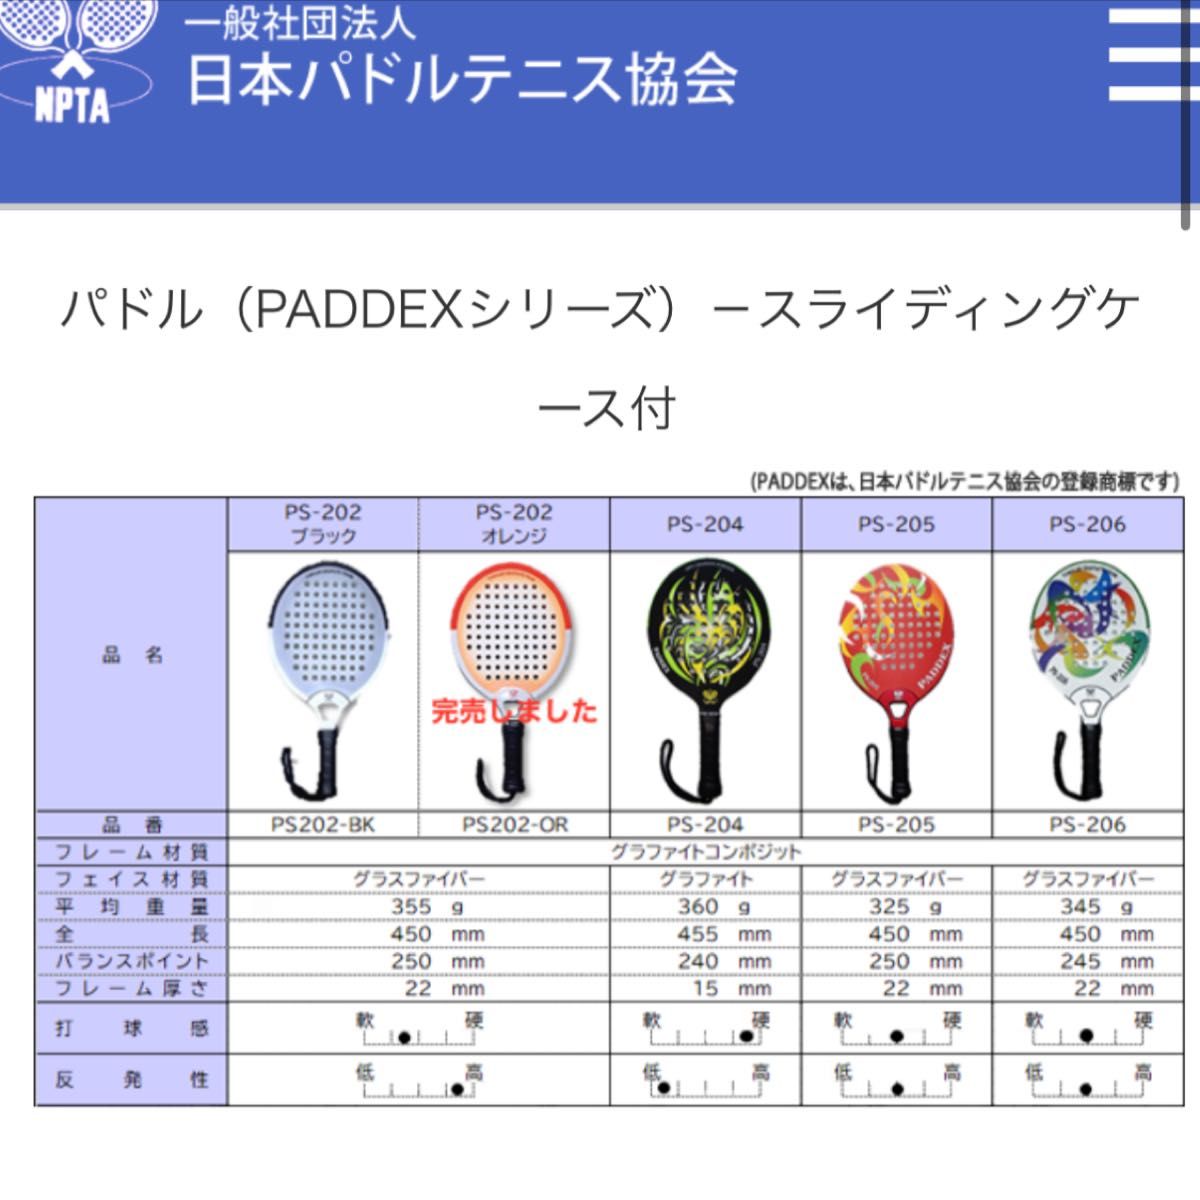 PADDEX PS-202 日本パドルテニス教会公認 パドルテニスラケット 布製収納ケース付き パドルテニス